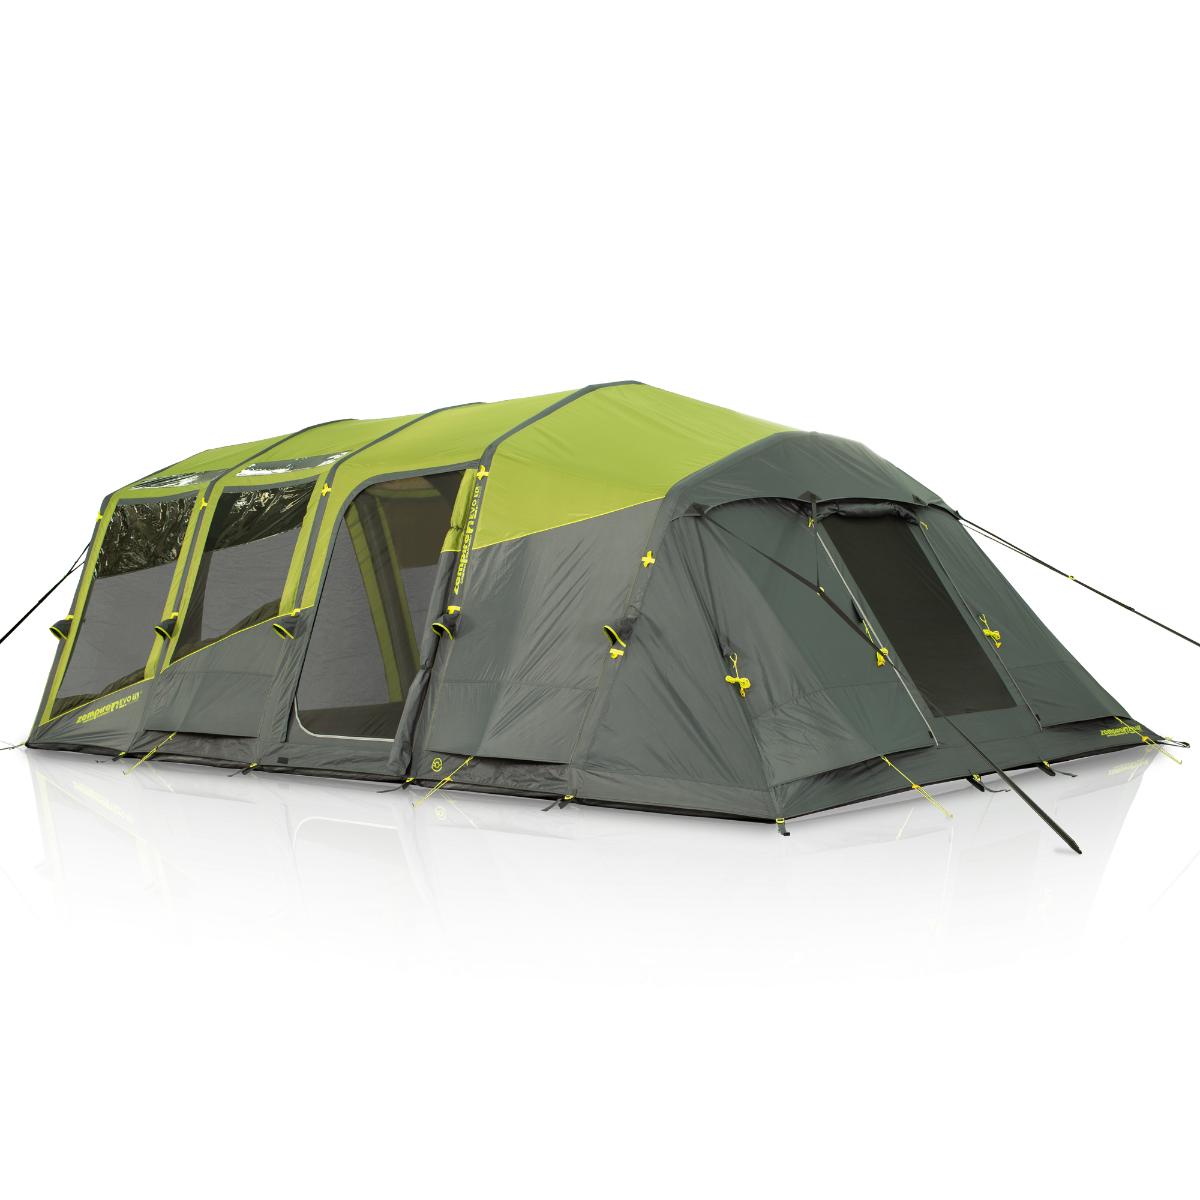 Ex Display Model Zempire EVO TL V2 Air Tent